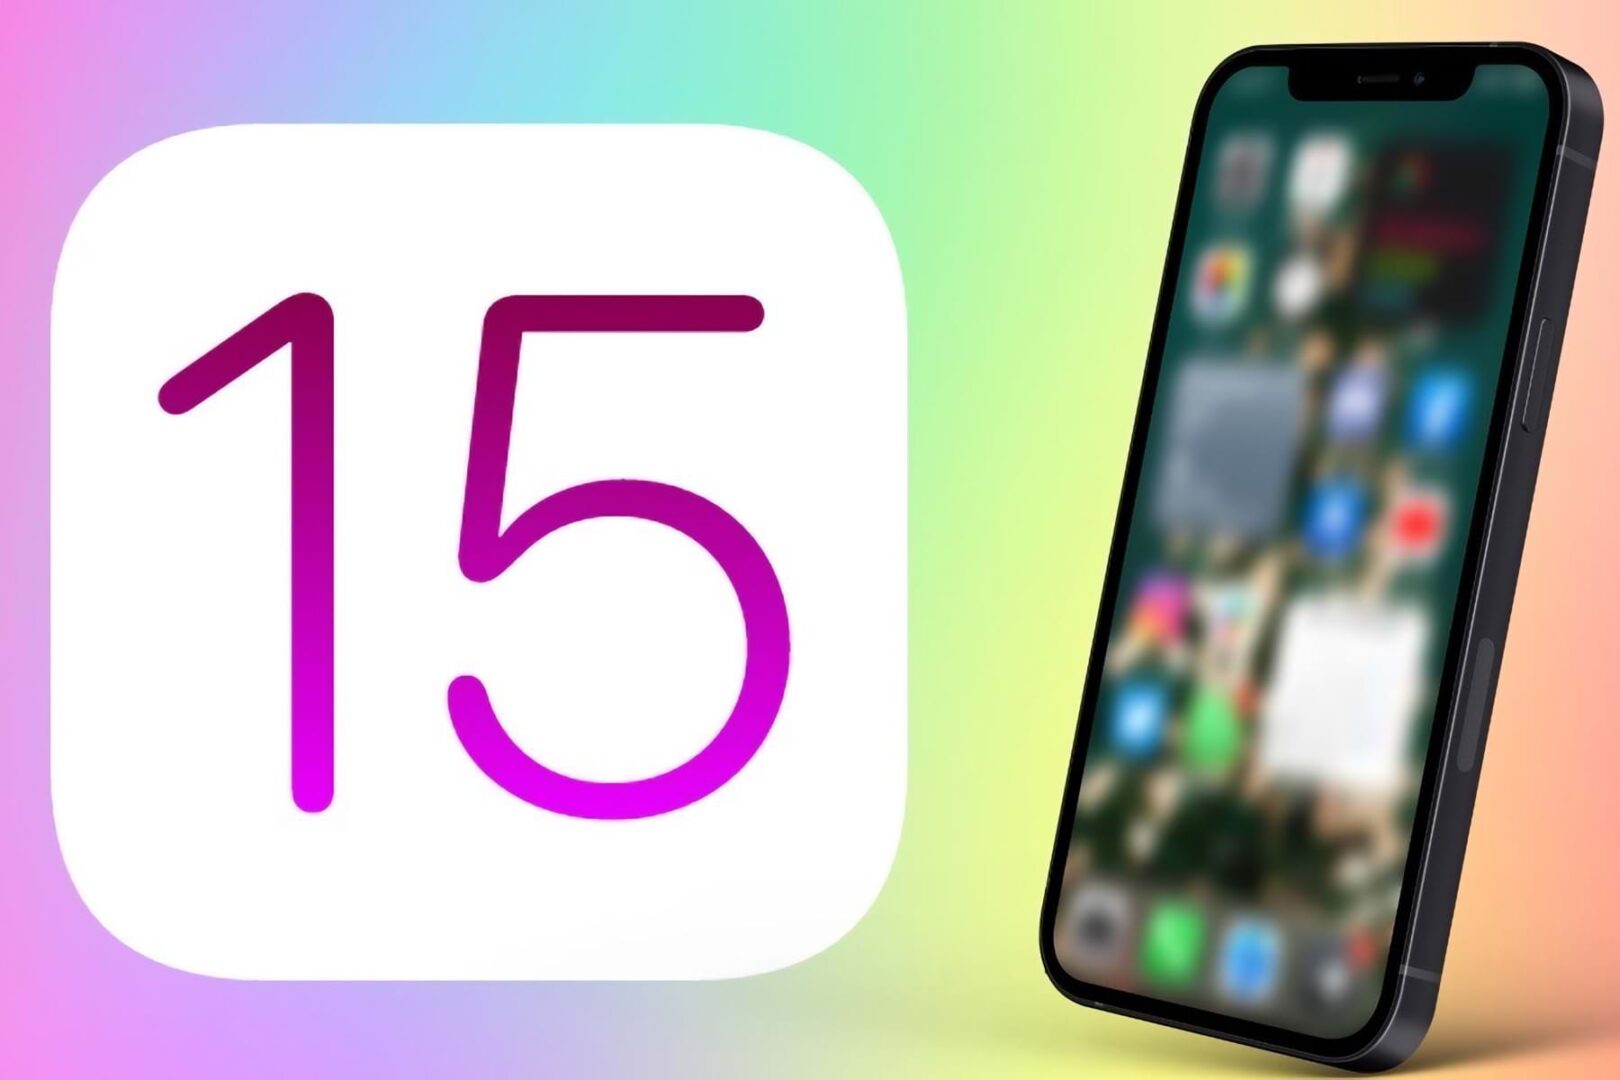 في مؤتمر المطورين العالمي أبل تطلق تحديثها الجديد لنظام التشغيل iOS 15 الأسبوع المُقبل